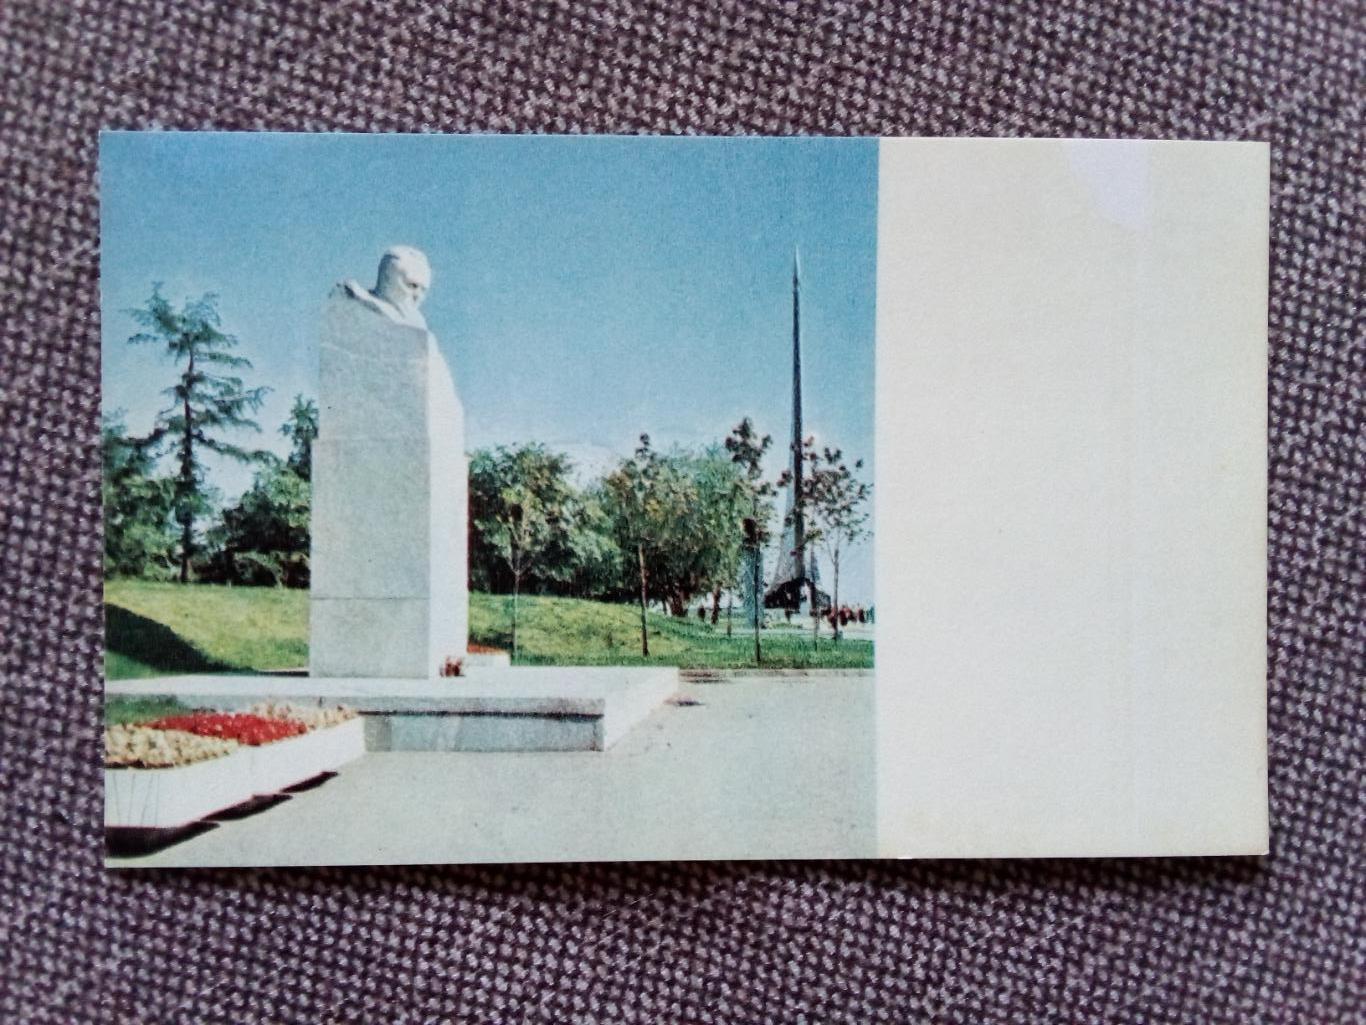 Города СССР : Москва - Памятник Королеву на аллее космонавтов 1969 г. (Космос)